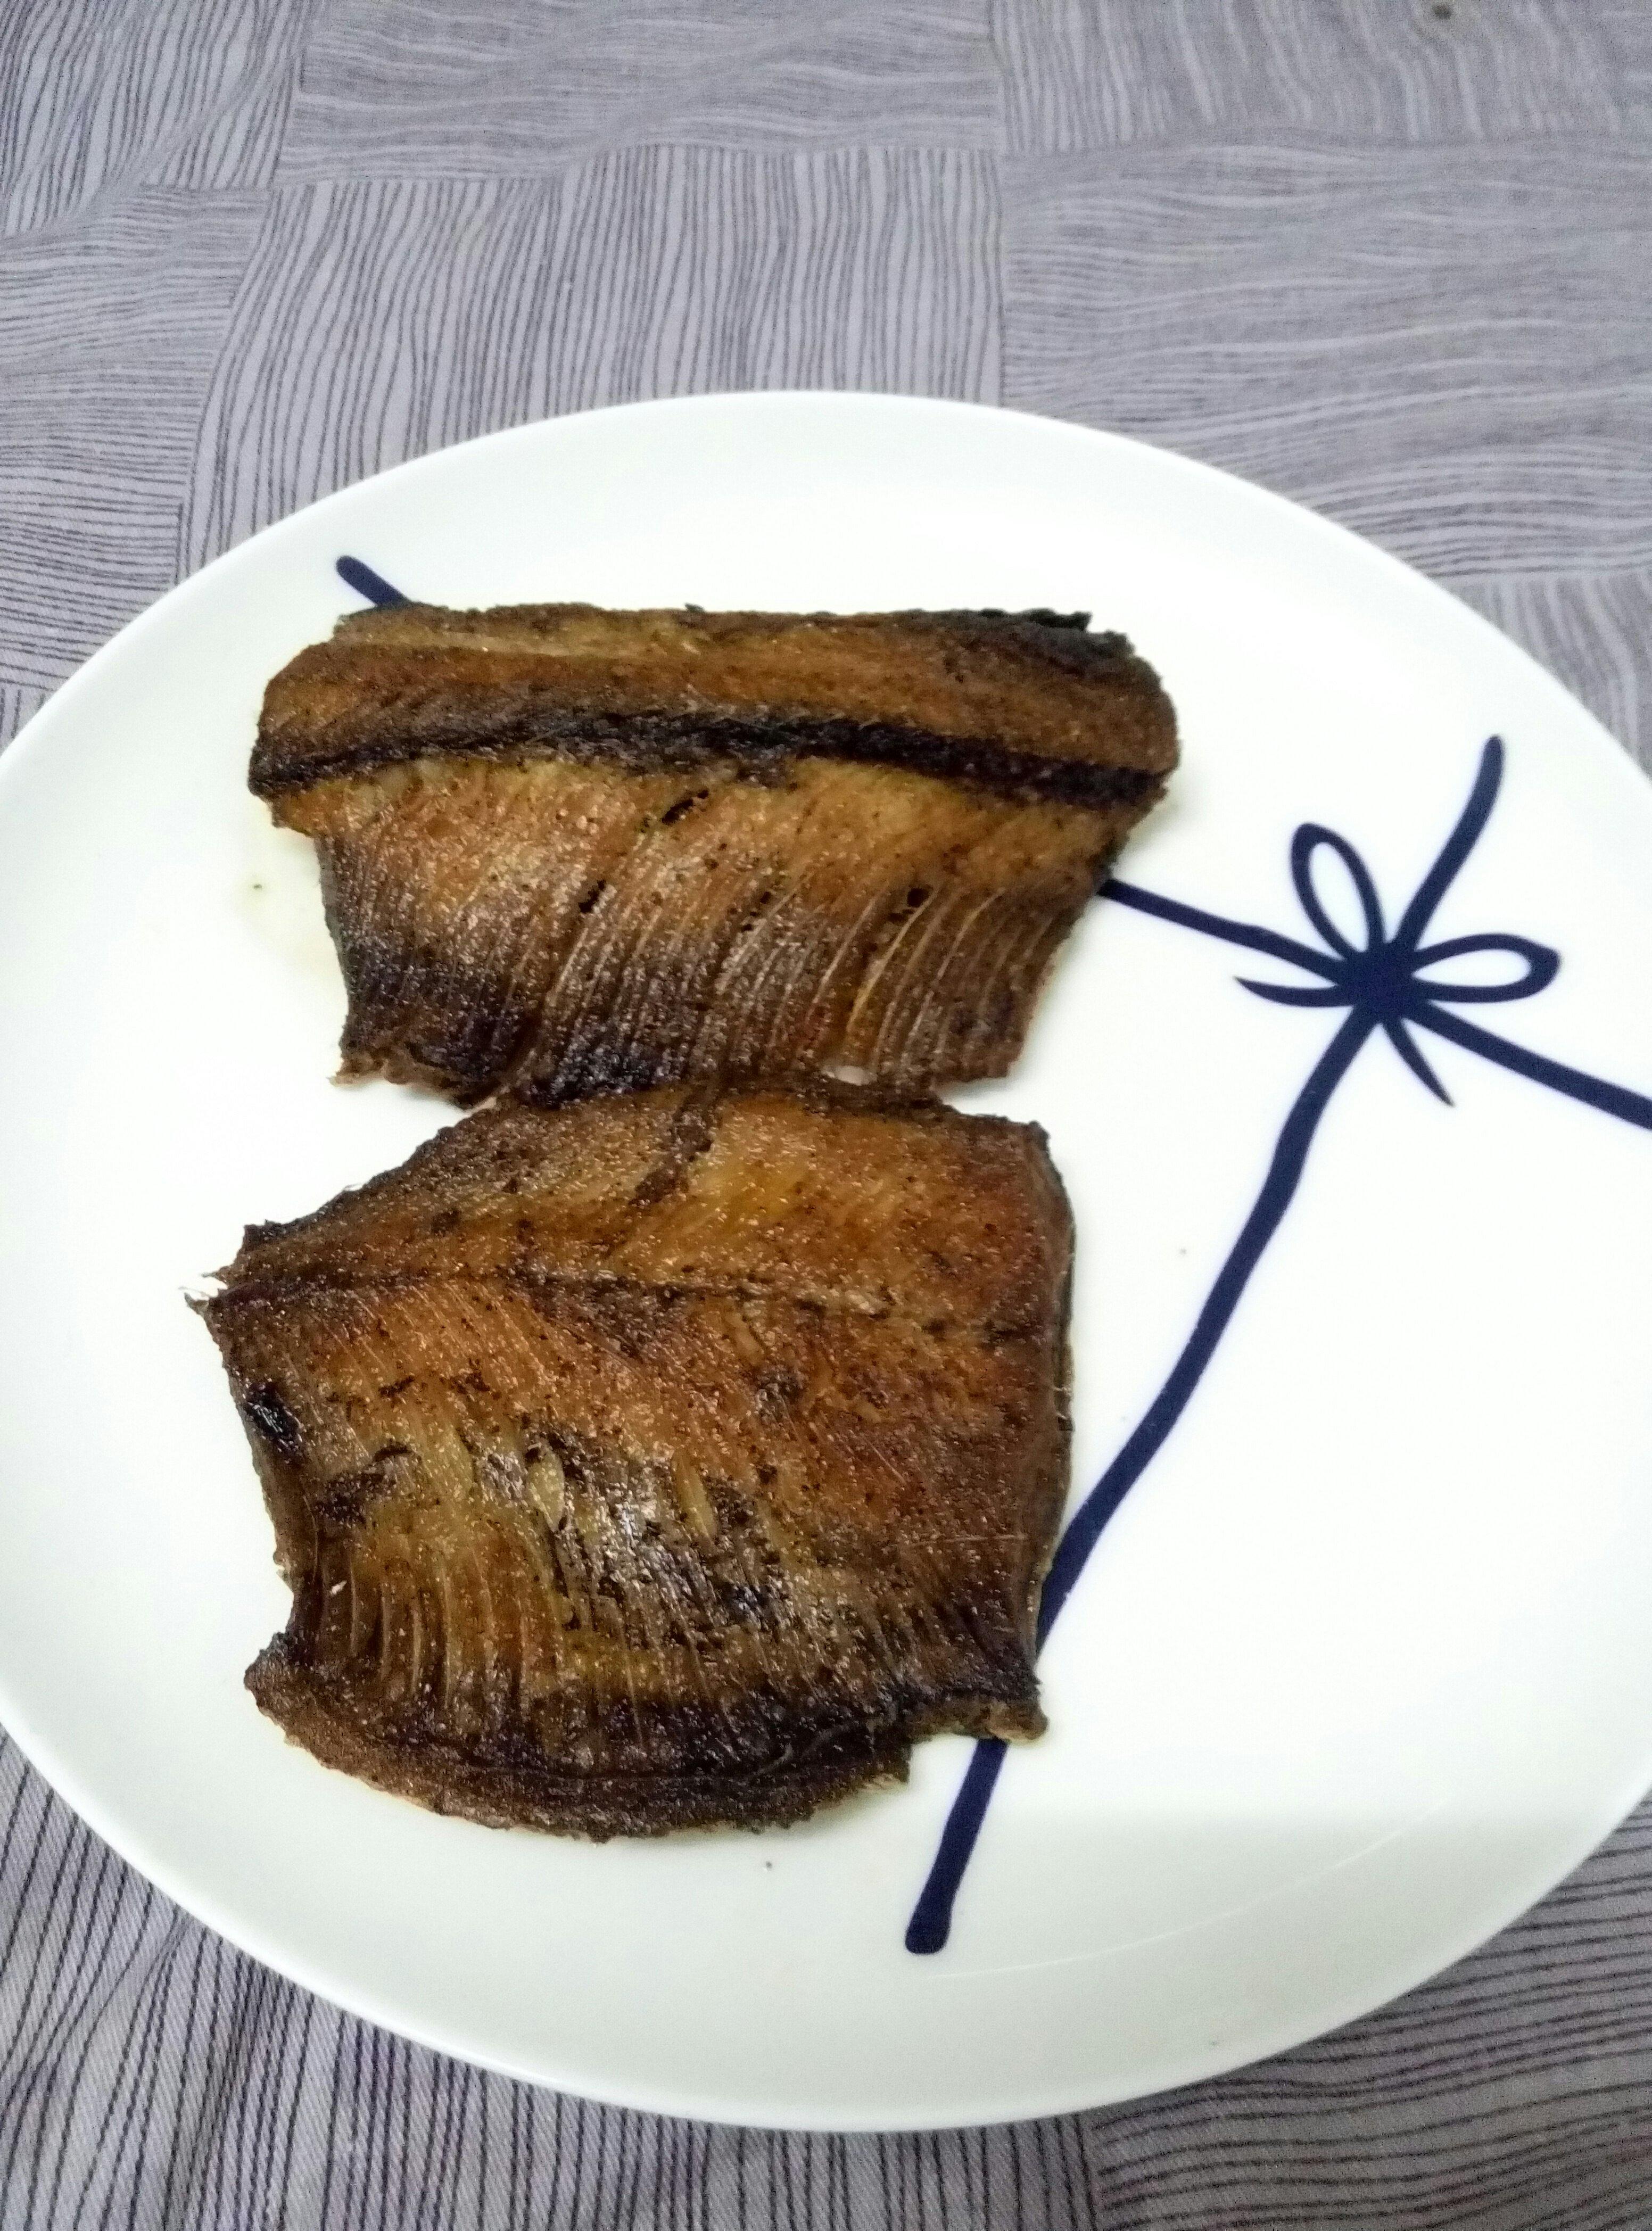 煎炸青鱼—简单下饭菜的做法